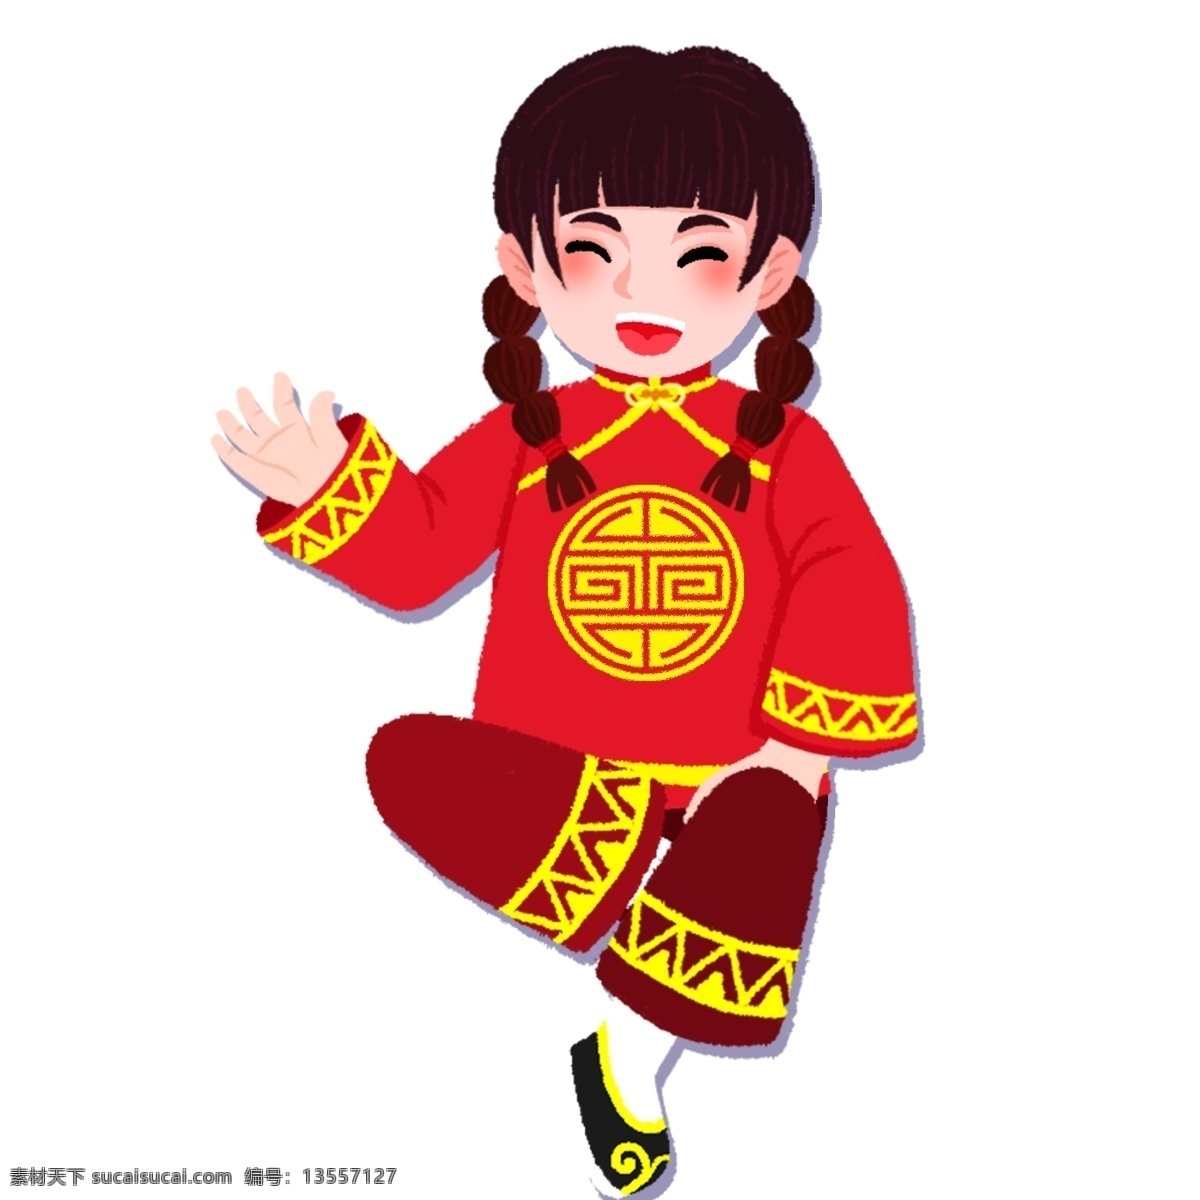 喜庆 过年 穿 新衣 女孩 春节 卡通 中国风 手绘 穿新衣 新春 猪年 新年